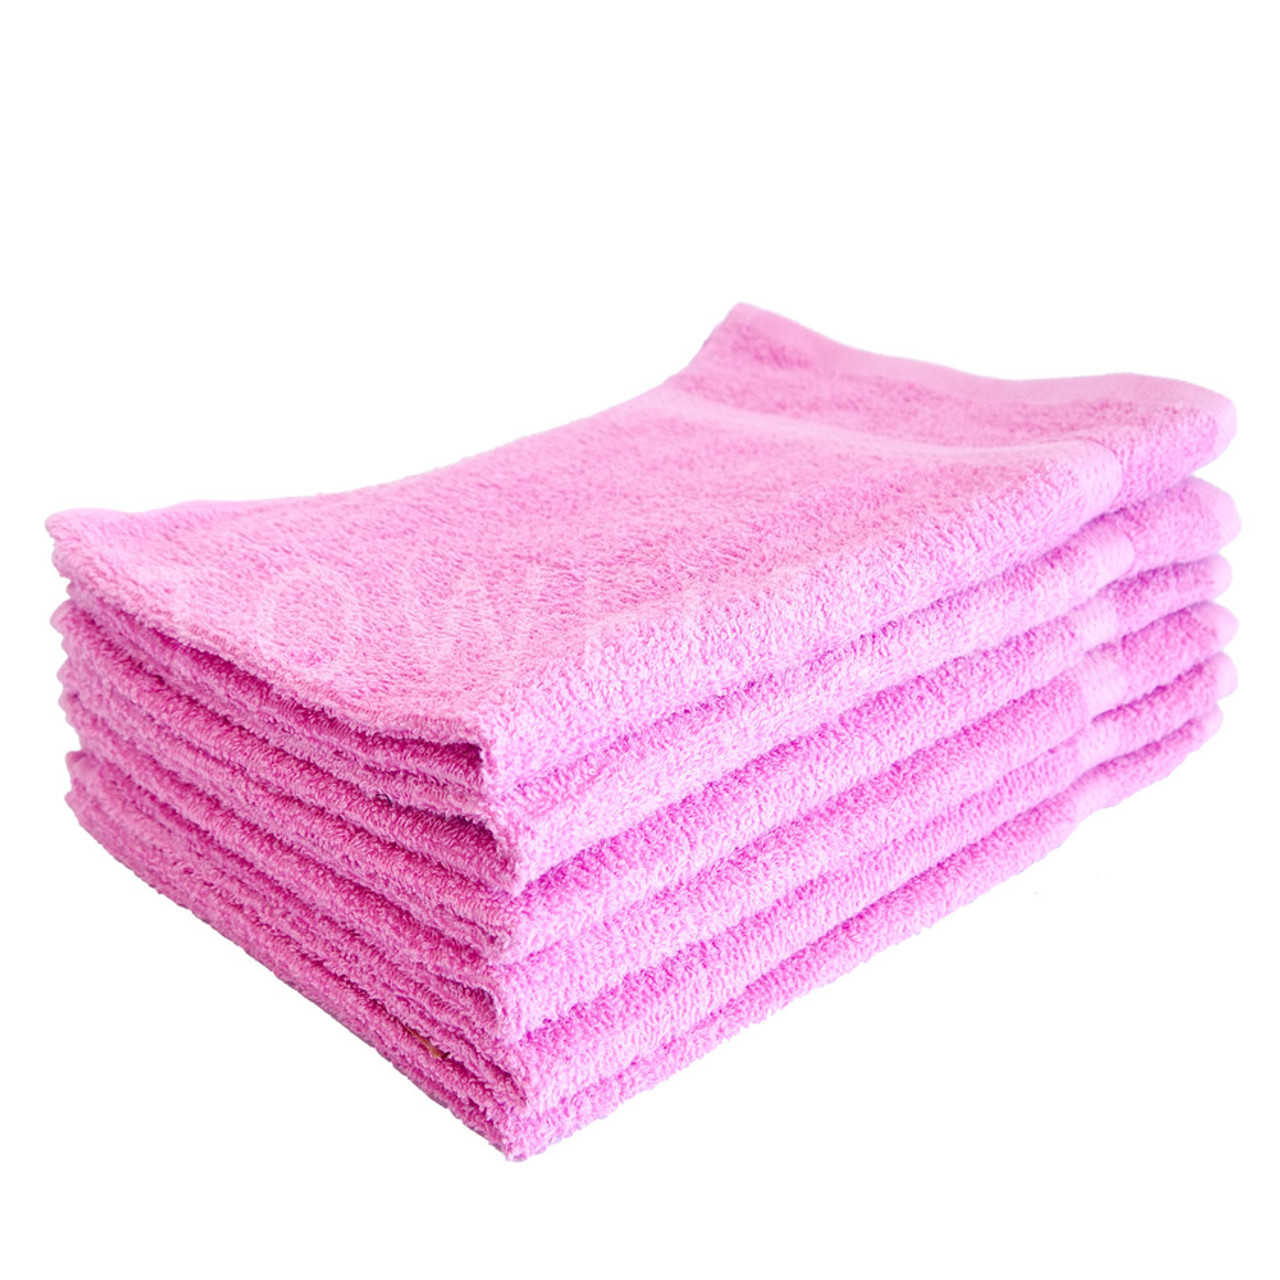 Wholesale Towels > 16x27 - PINK hand towels Premium Plus 100% Cotton